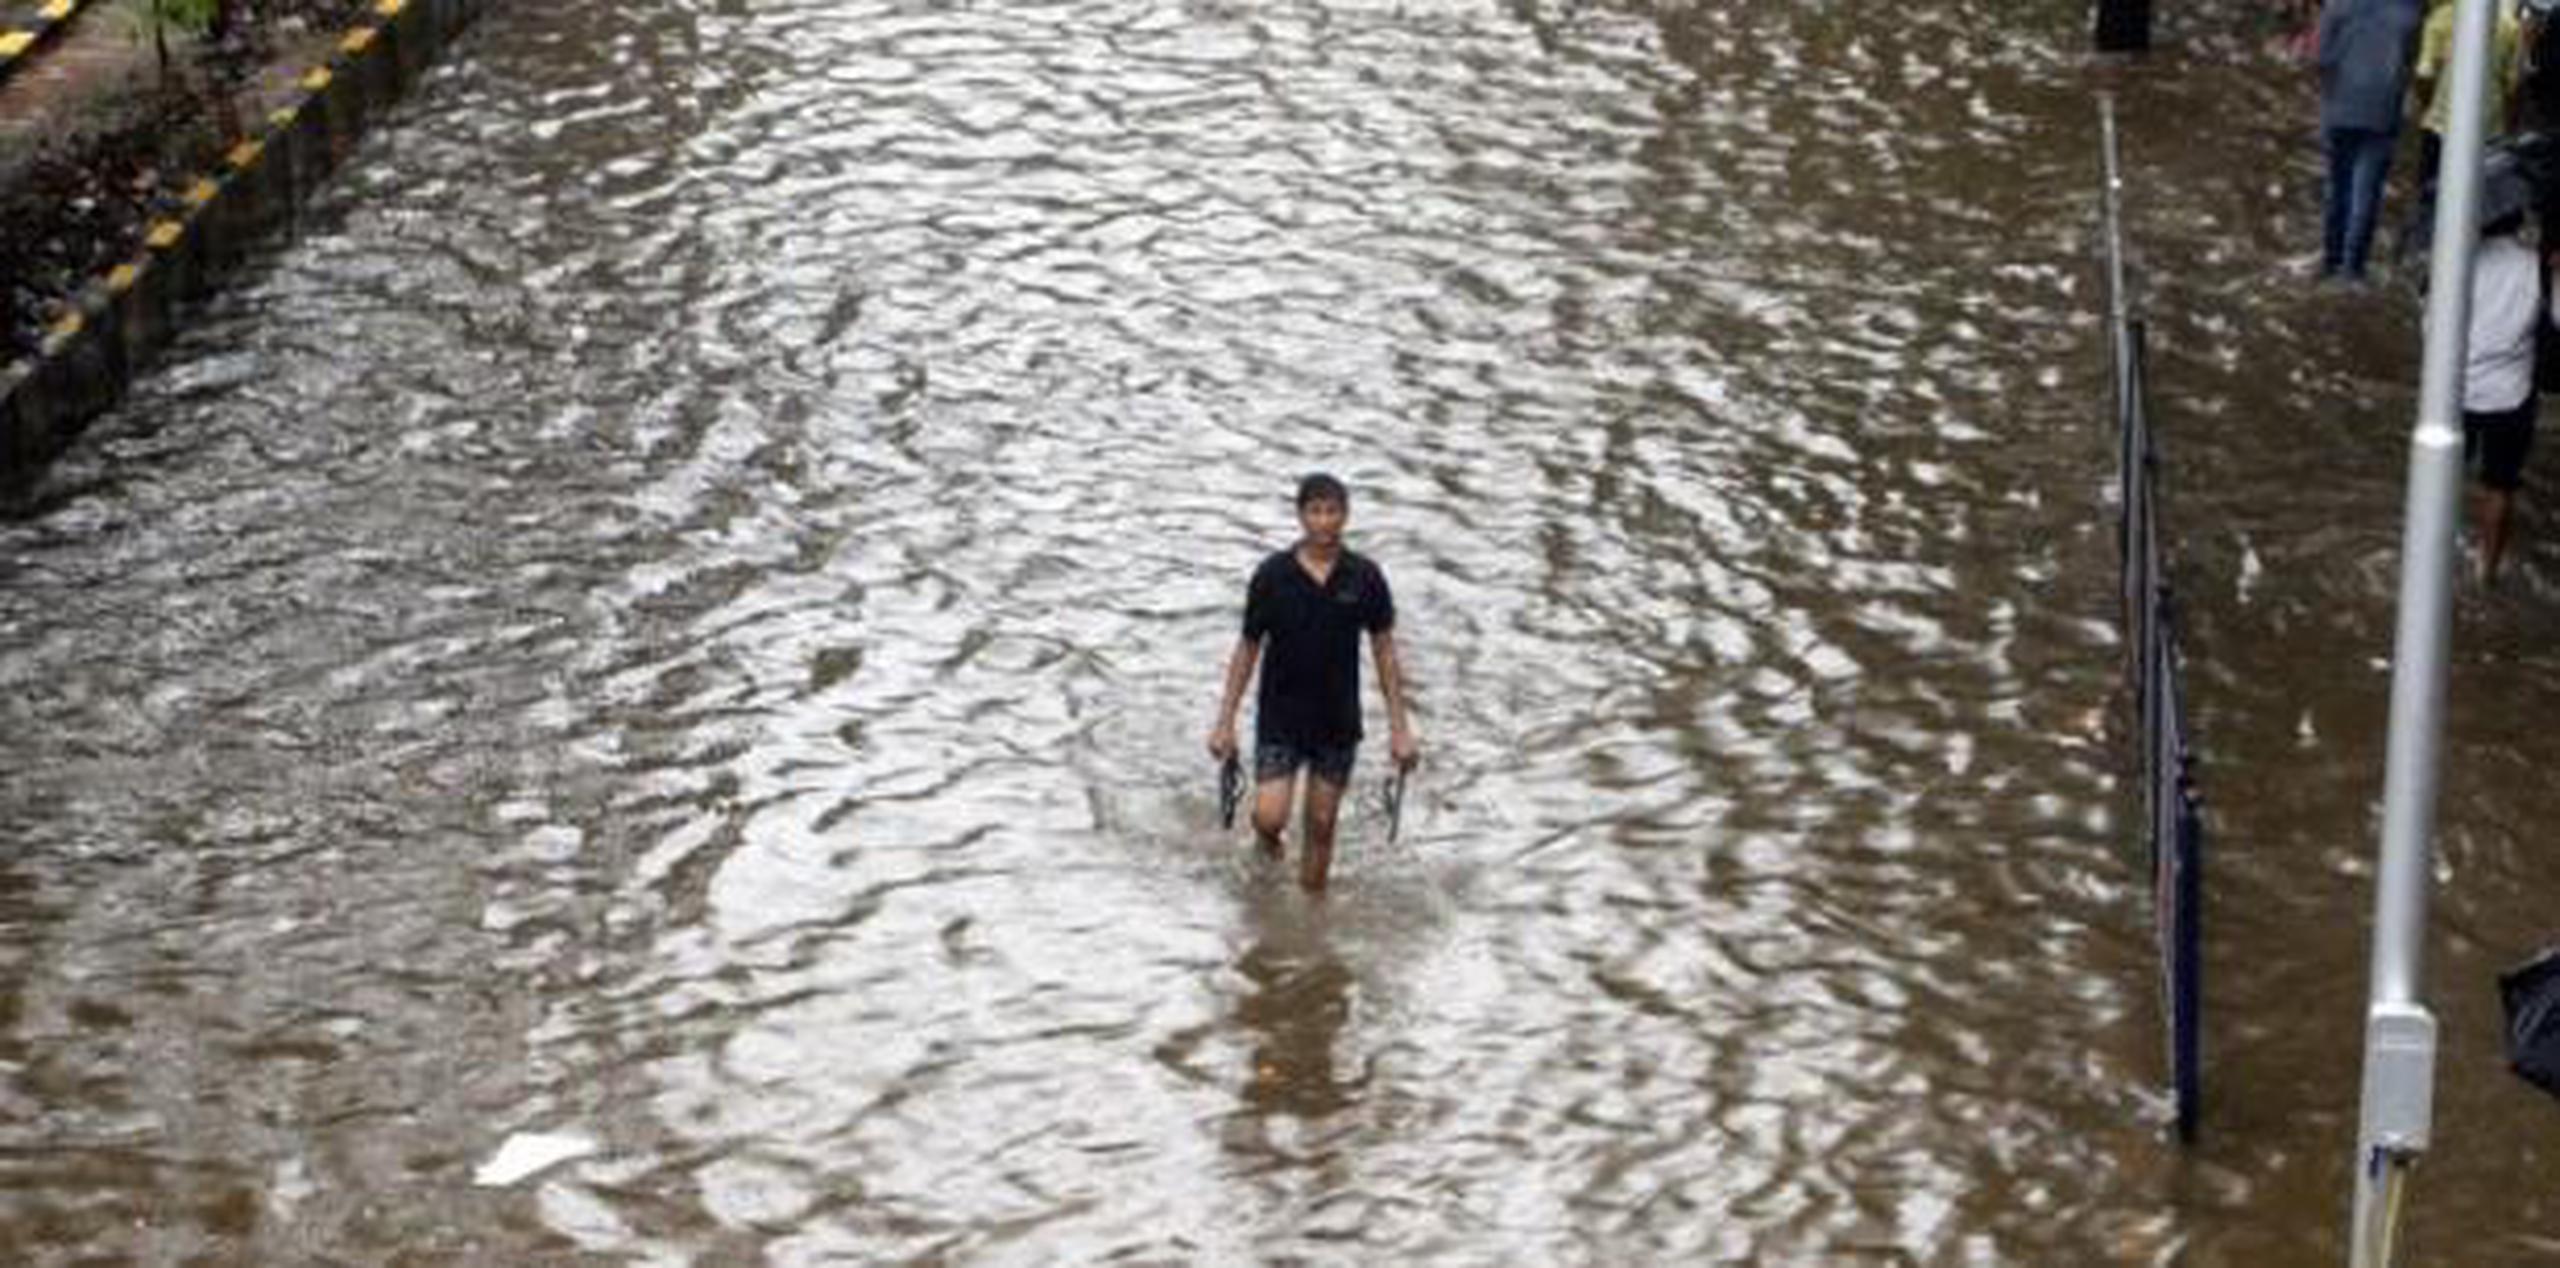 La temporada del monzón suele dejar lluvias intensas en el país entre junio y septiembre, que provocan inundaciones y otros daños. (AP)